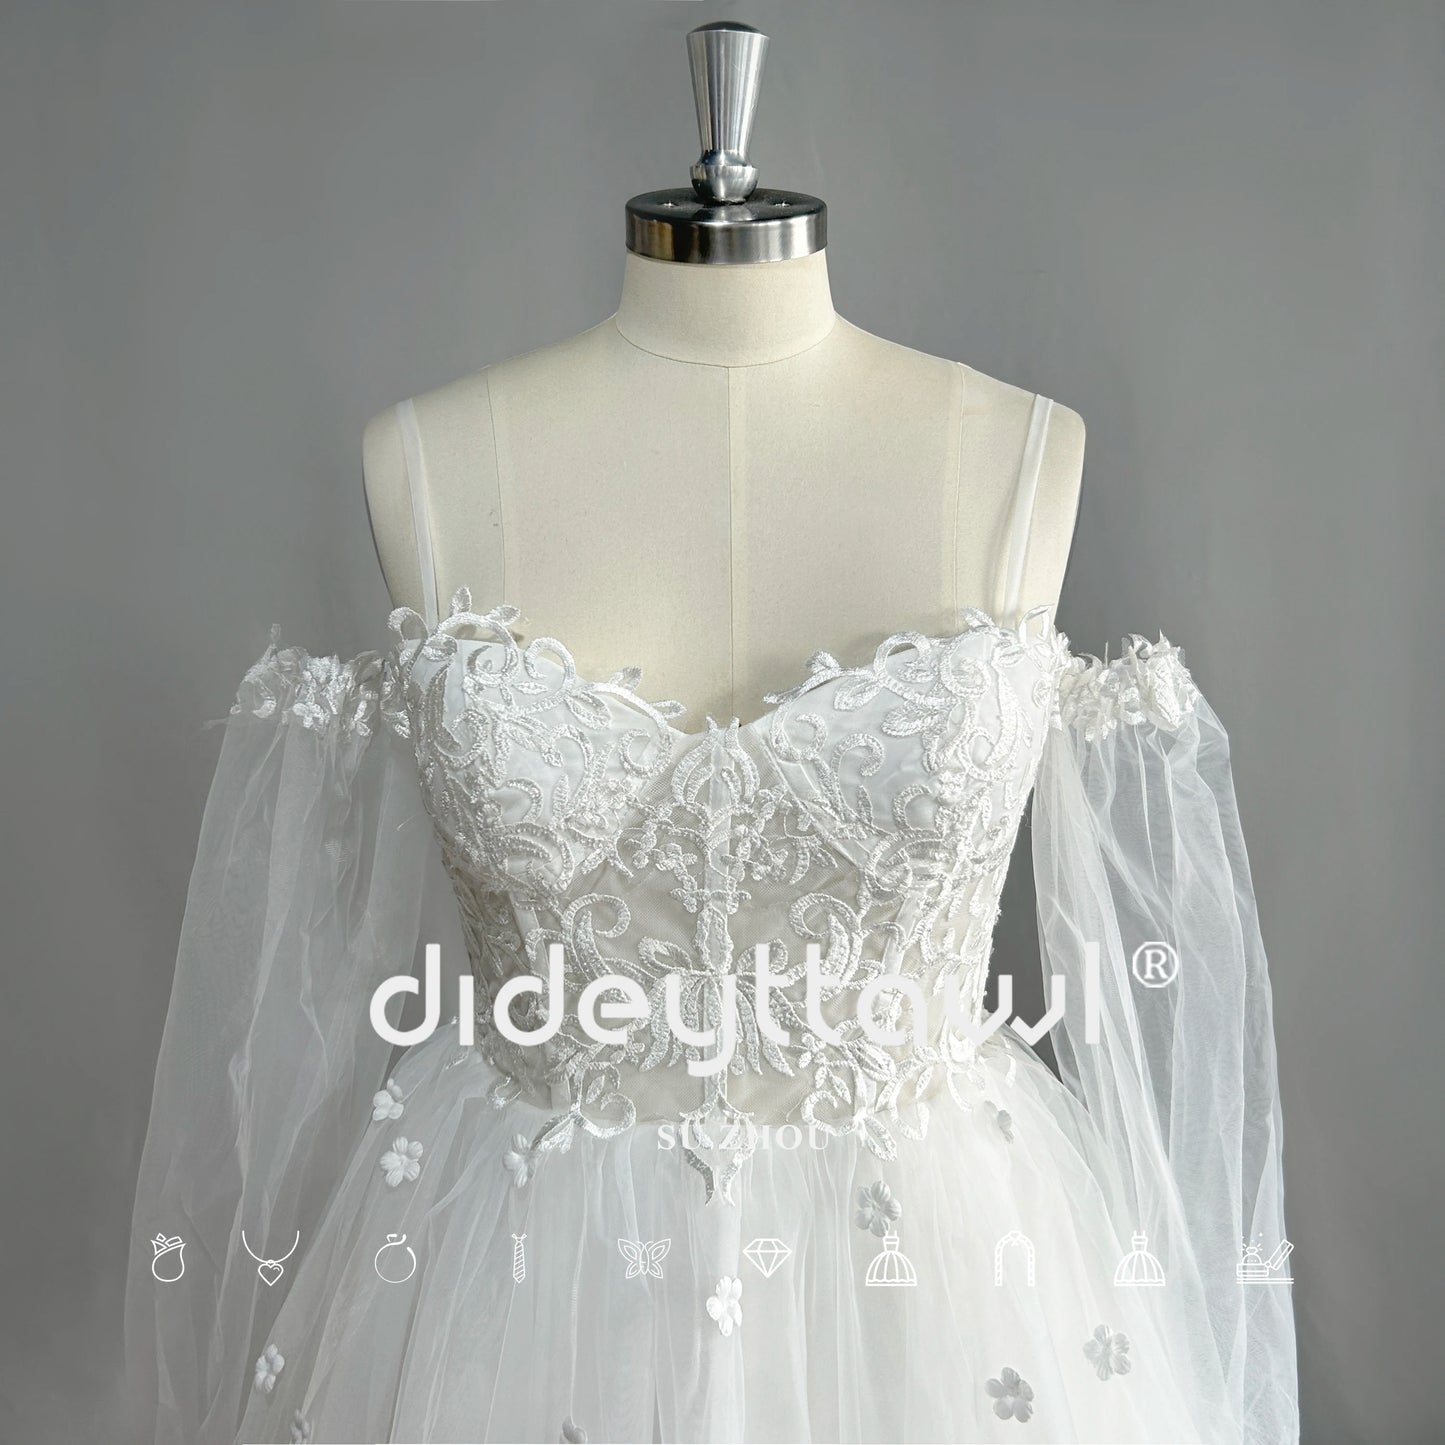 Dideytttawl sweetheart maniche lunghe tulle abito da sposa corto mini lunghezza fuori spalla abito da sposa foto